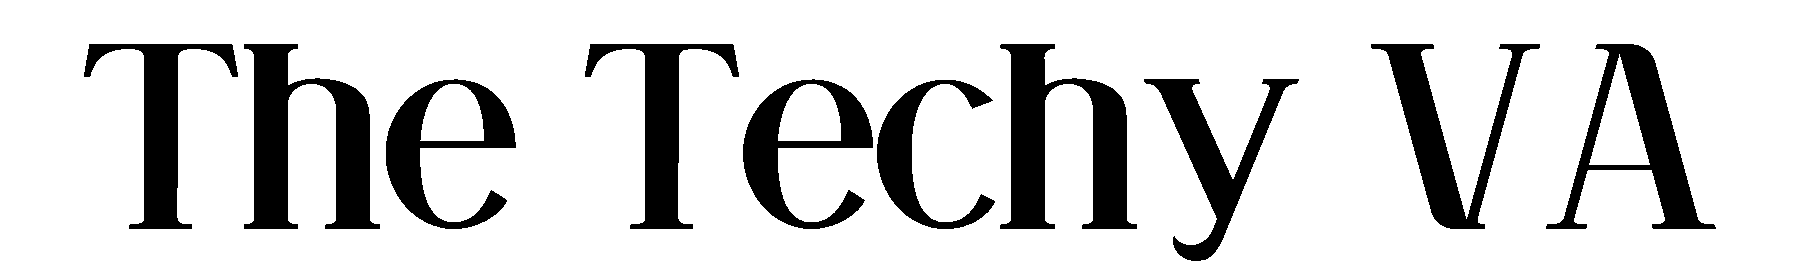 The Techy VA logo